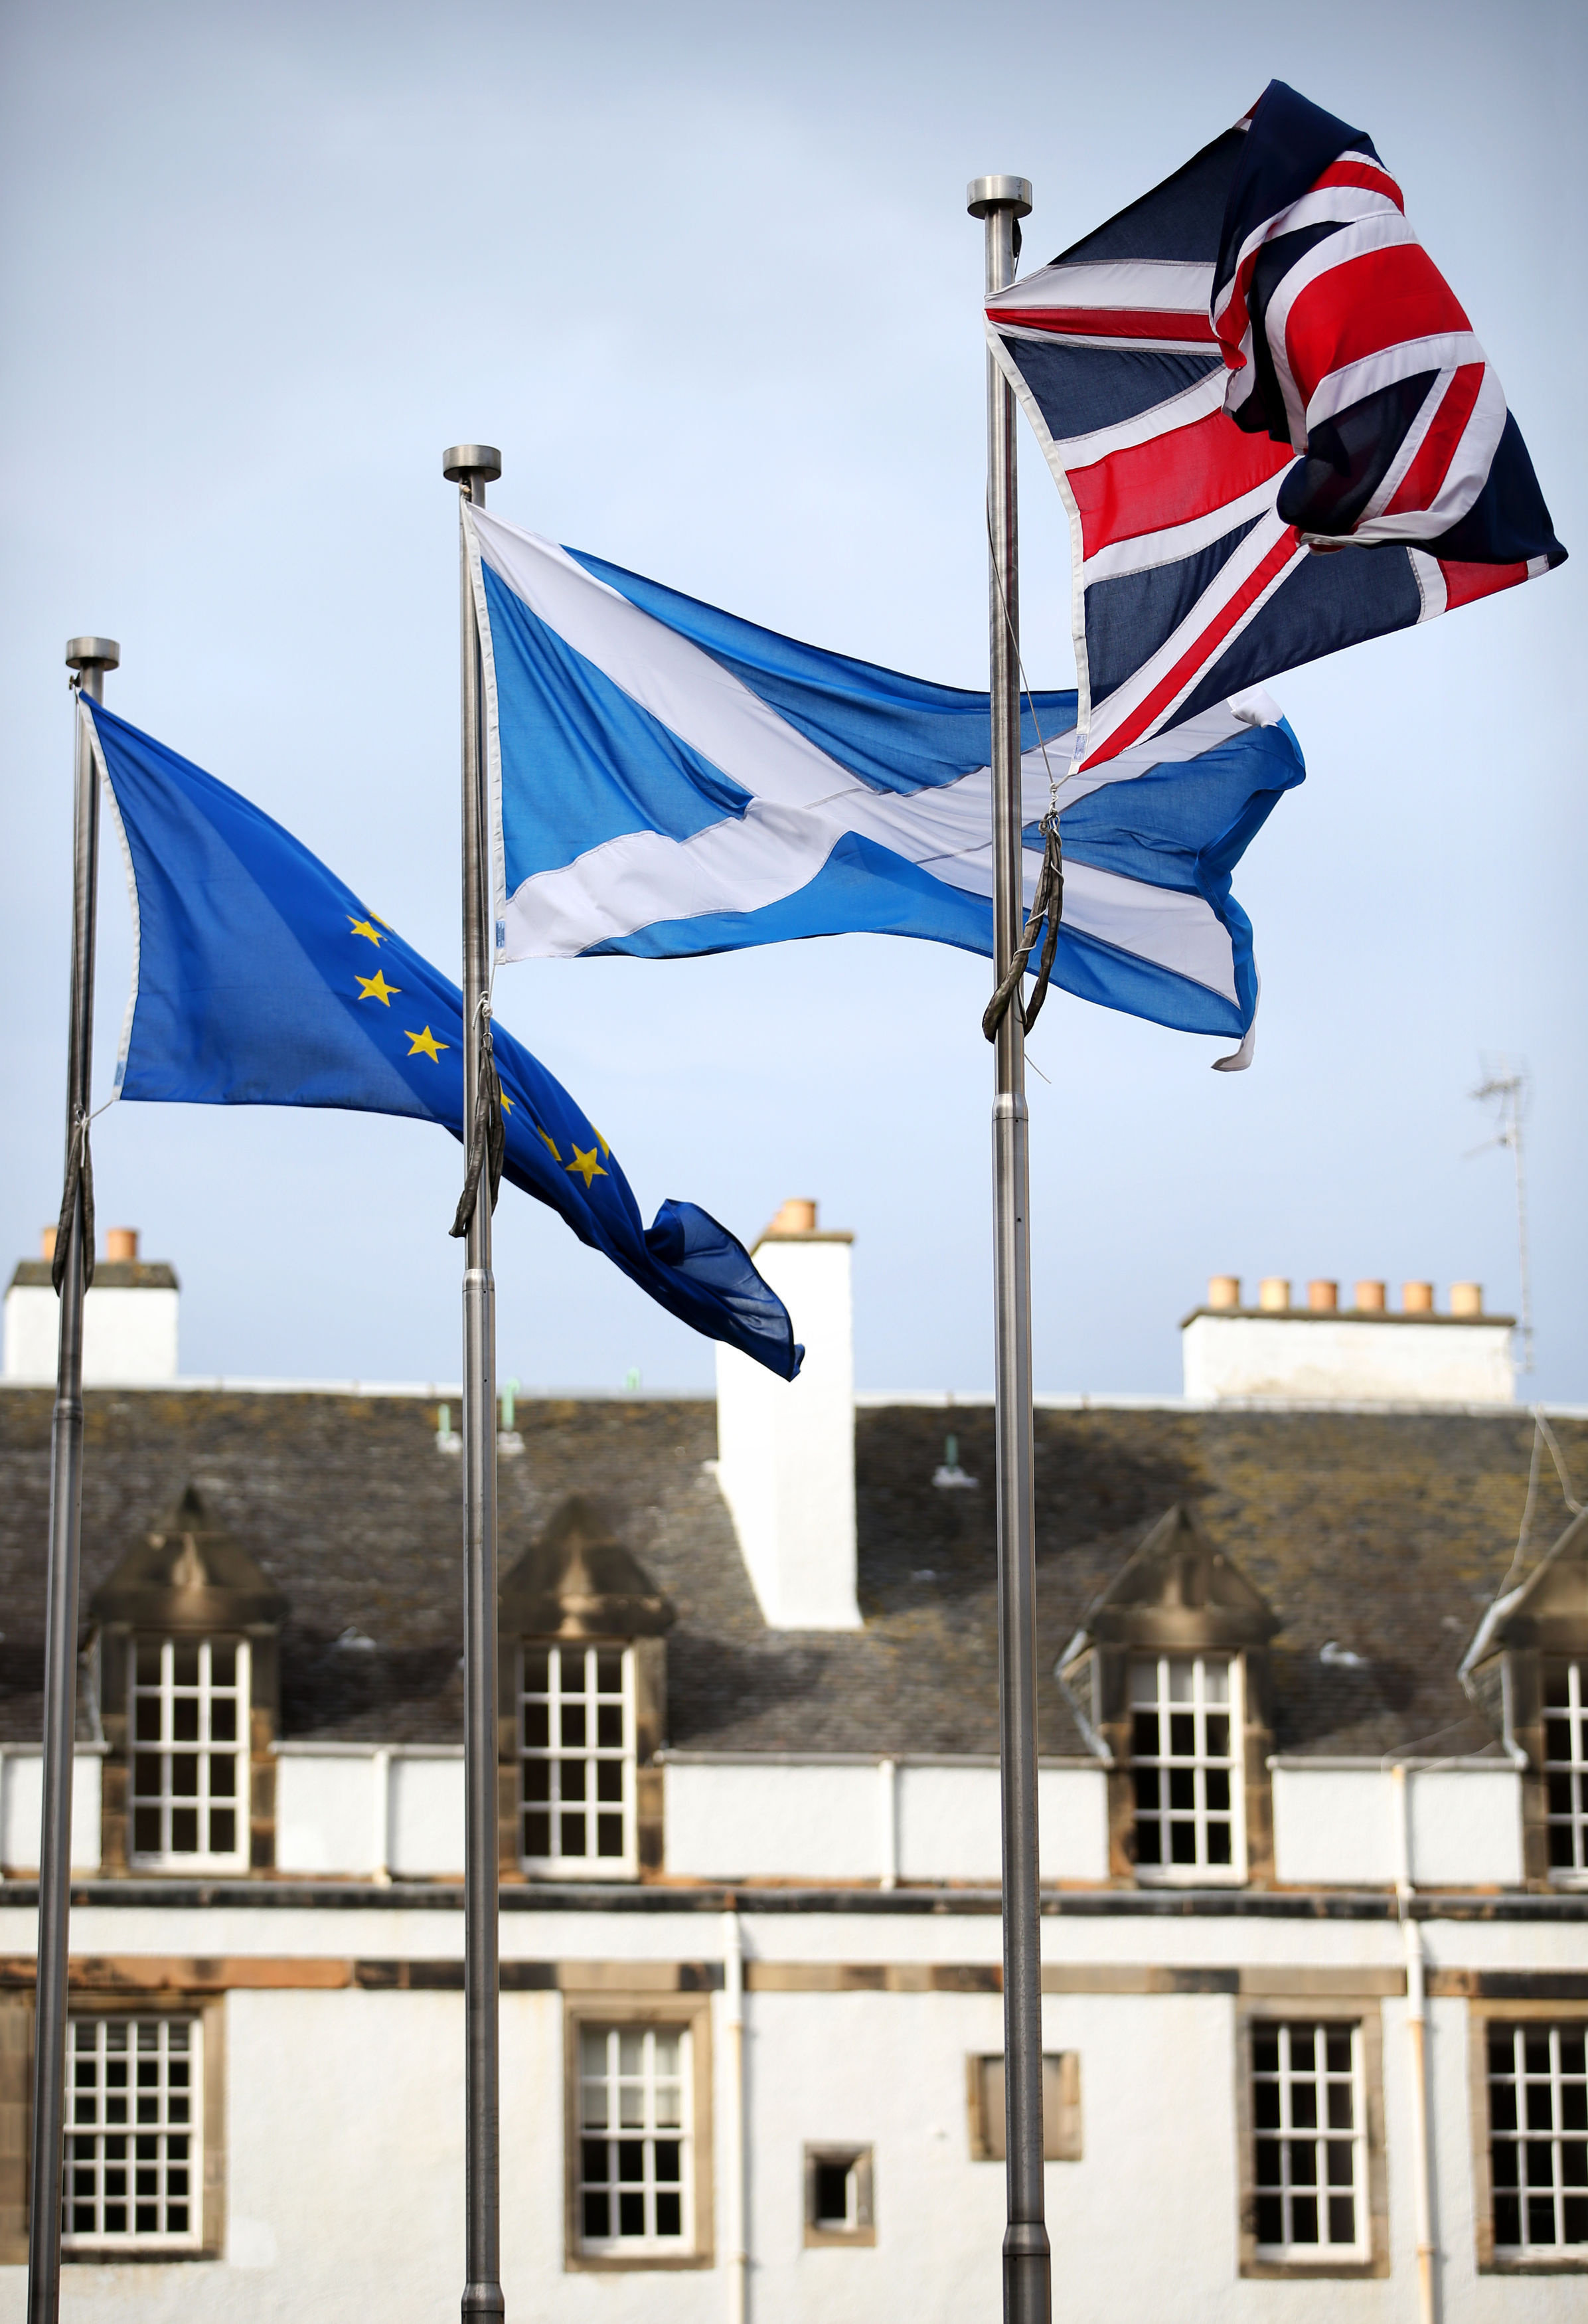 Scotland economy: Growth slows sharply, against backdrop of UK deceleration